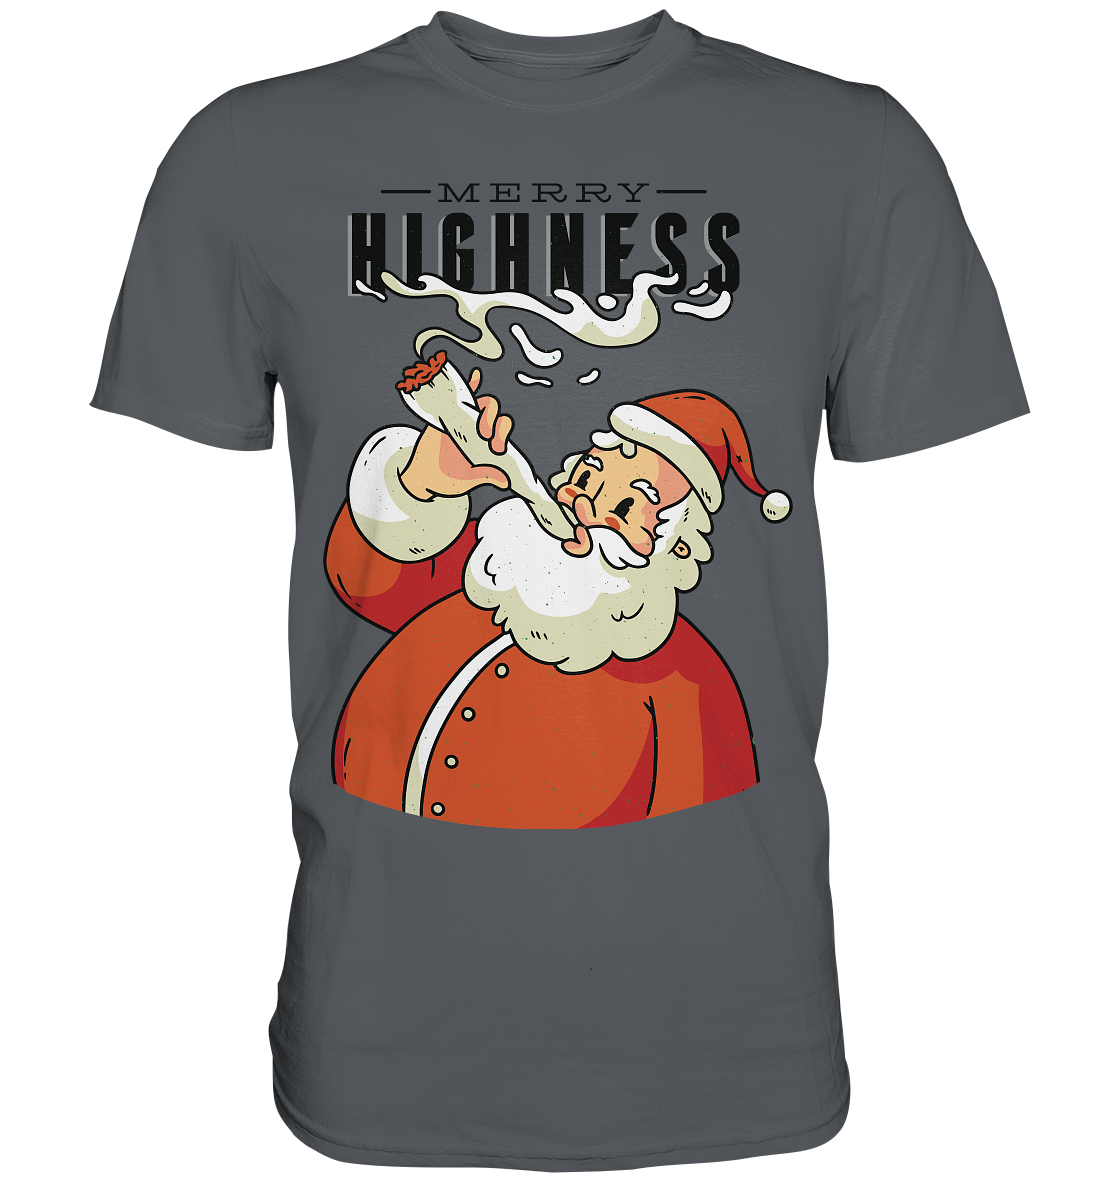 Weihnachten Kiffender Weihnachtsmann Nikolaus Merry Highness - Premium Shirt